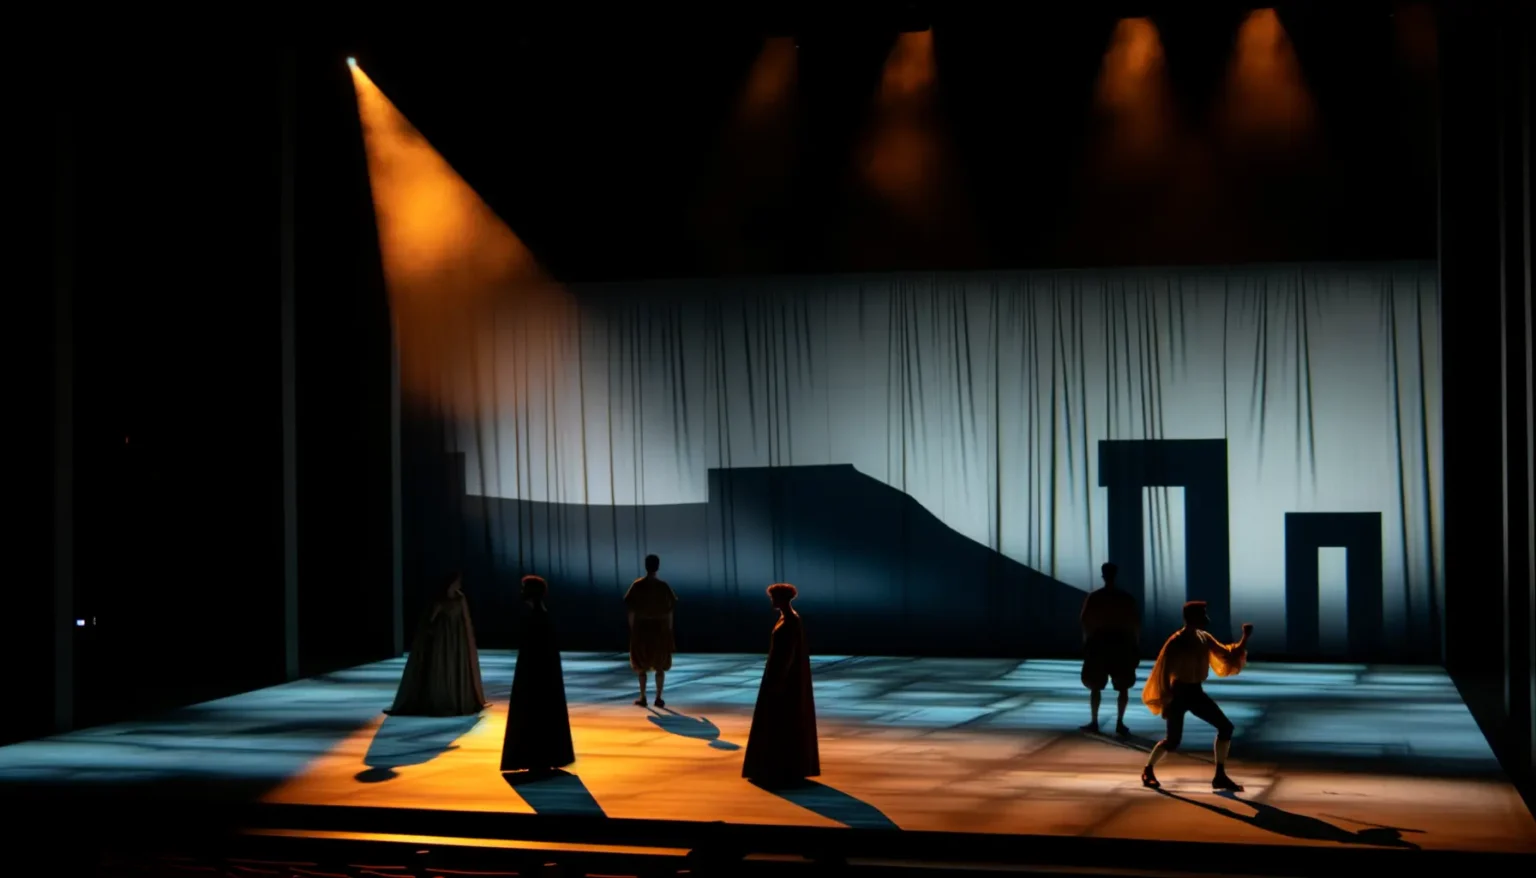 Fünf Schauspieler auf einer Theaterbühne beleuchtet von dramatischem Spotlicht, was lange Schatten auf dem Boden wirft, vor einem abstrakten Bühnenhintergrund, der einfache geometrische Formen und Linien zeigt.